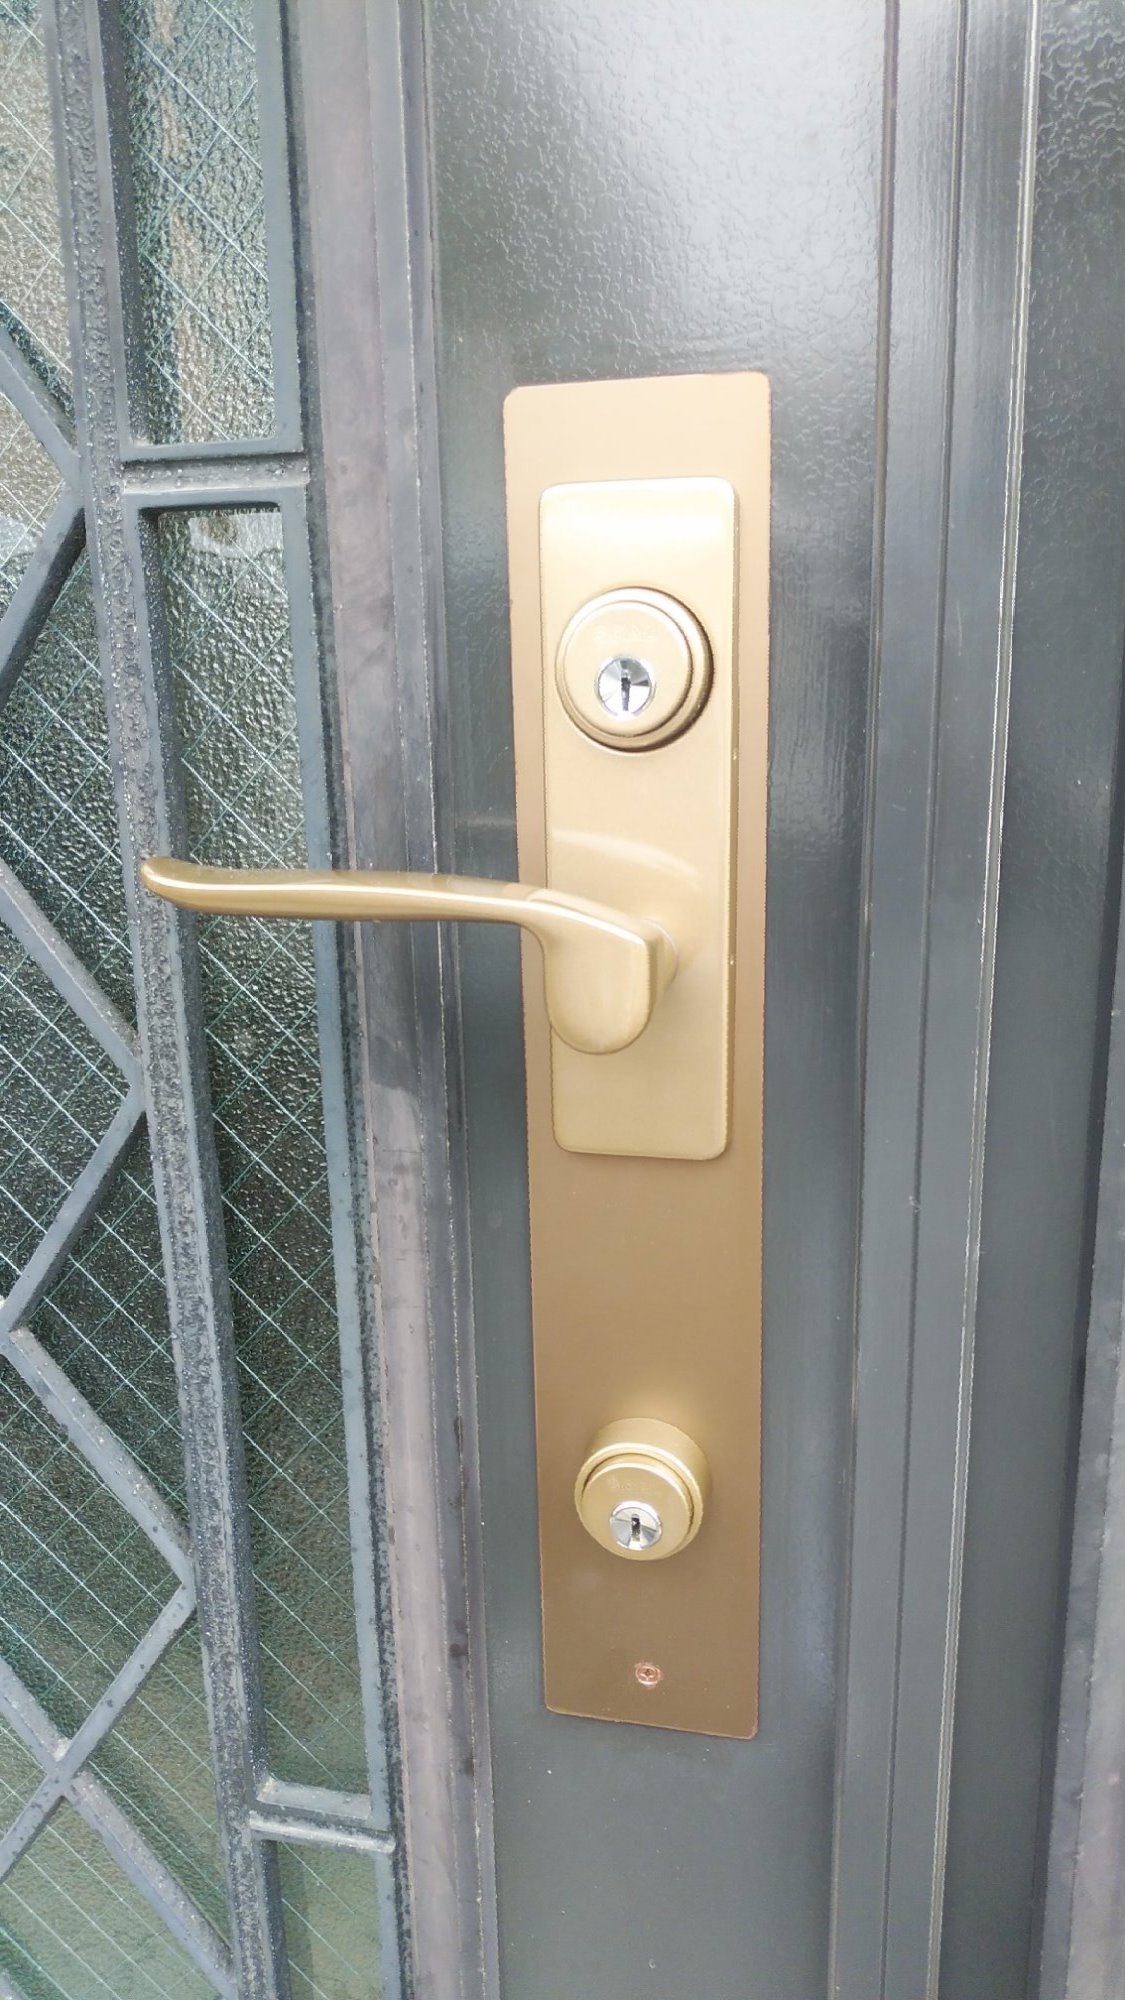 戸建住宅の鍵交換 | 鍵・電気錠・オートロック・窓ドアの事なら県北ロックサービスへ